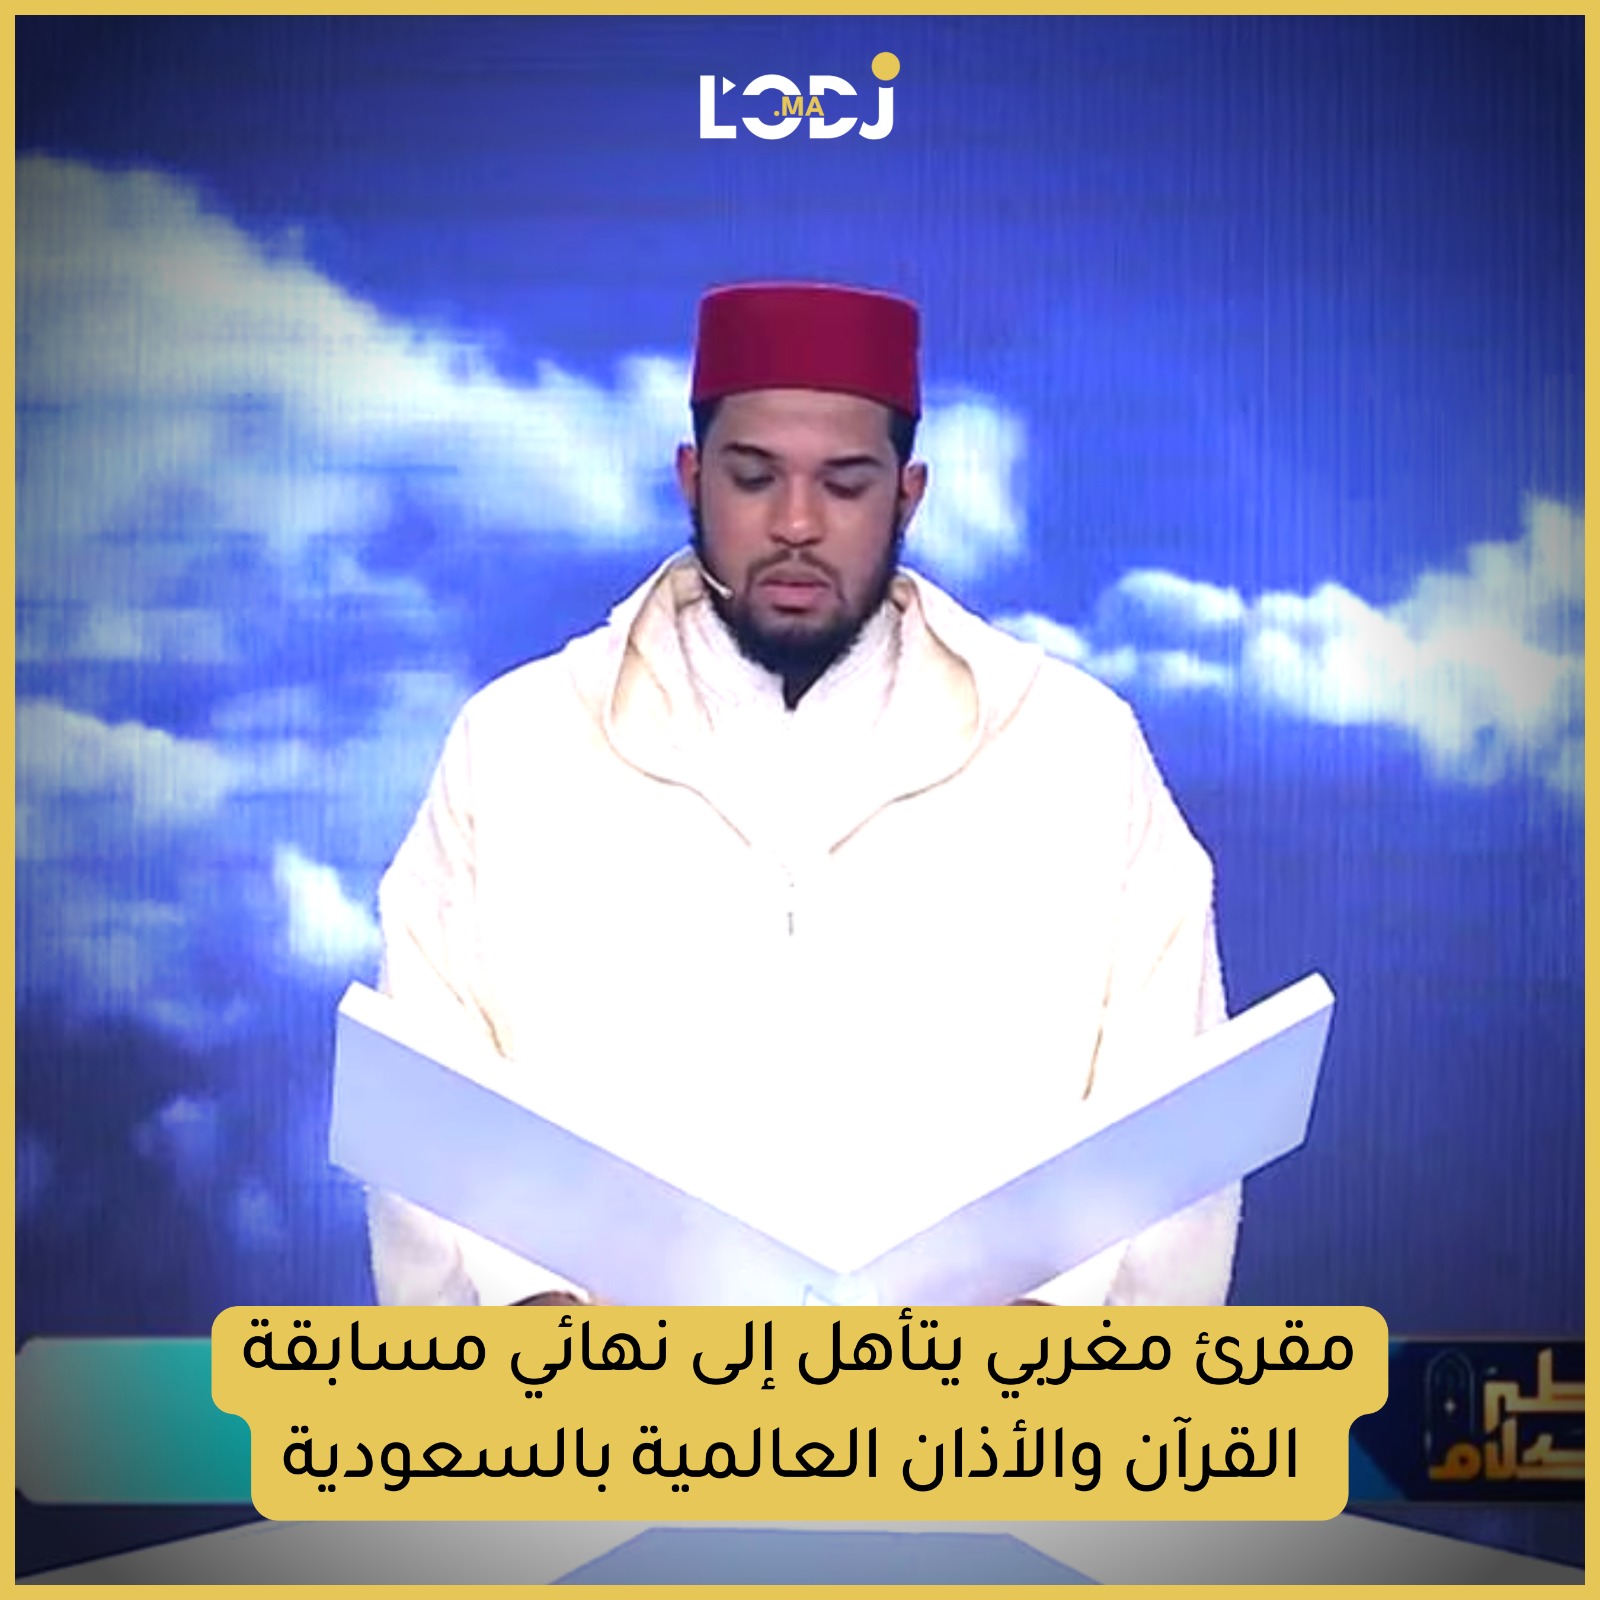 مقرئ مغربي يتأهل إلى نهائي مسابقة القرآن والأذان العالمية بالسعودية